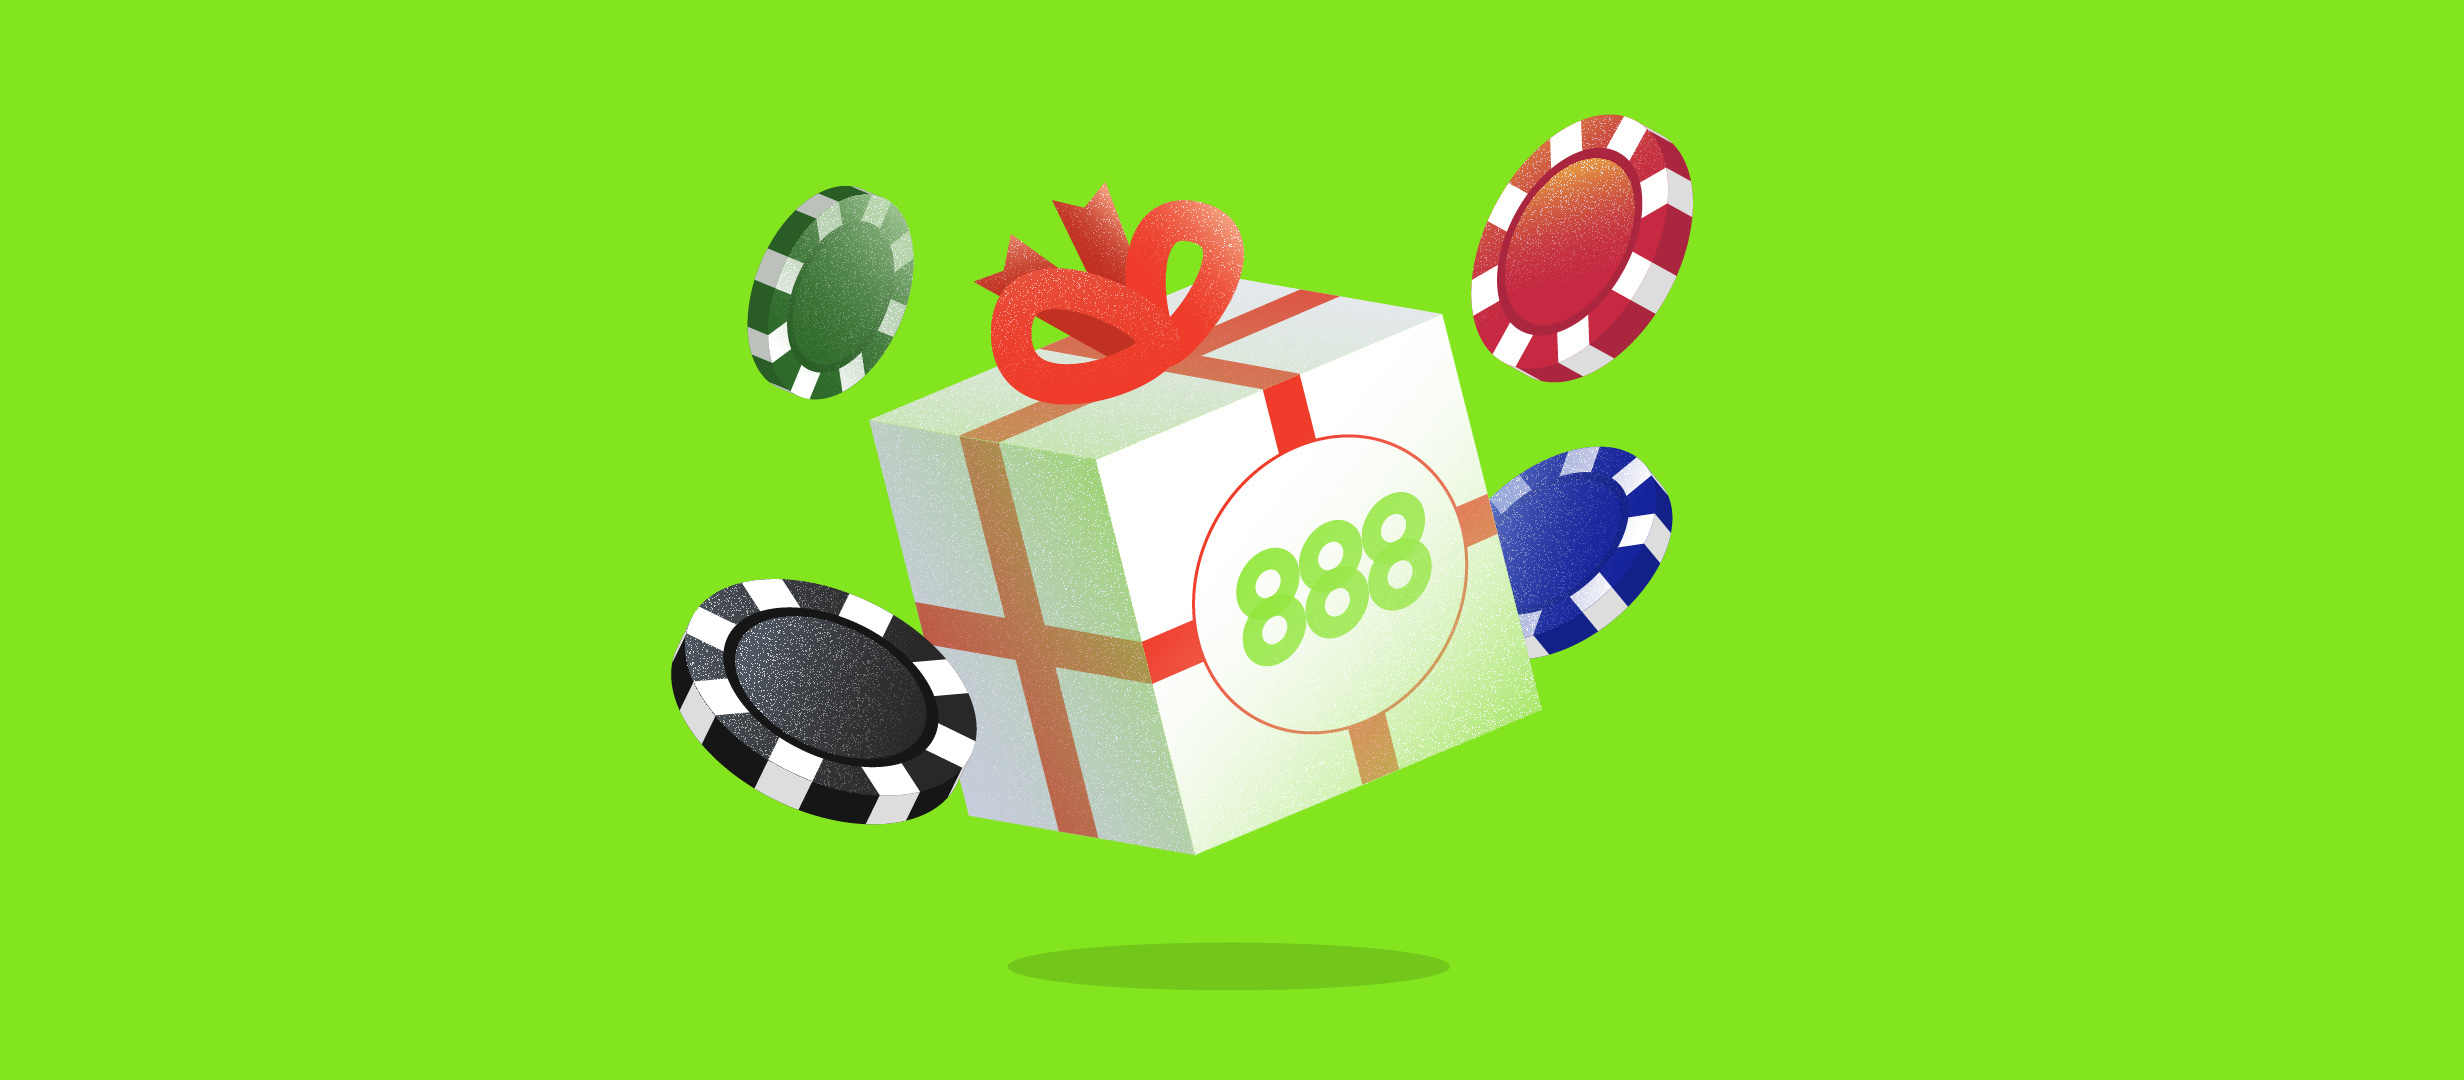 888 Casino - Trei strategii pe care sa le aplici la mesele de baccarat